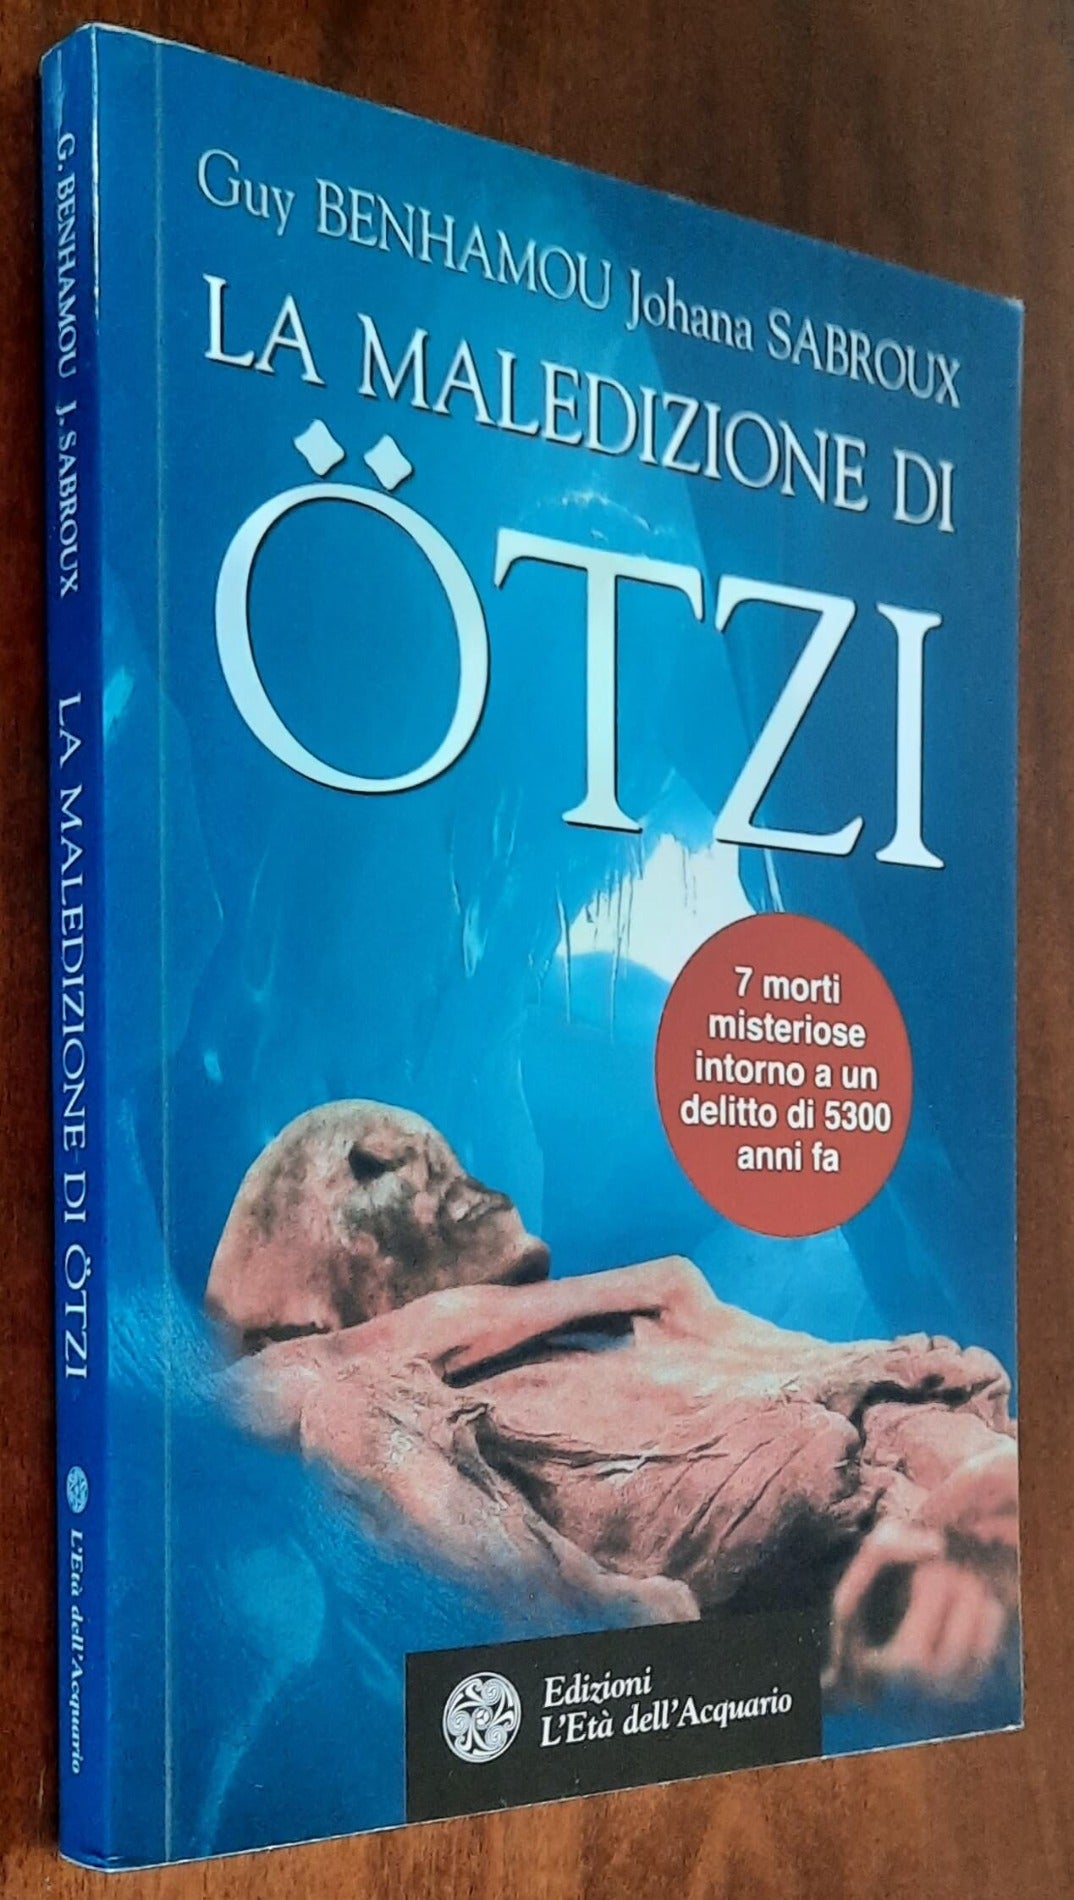 La maledizione di Ötzi, la mummia dei ghiacci